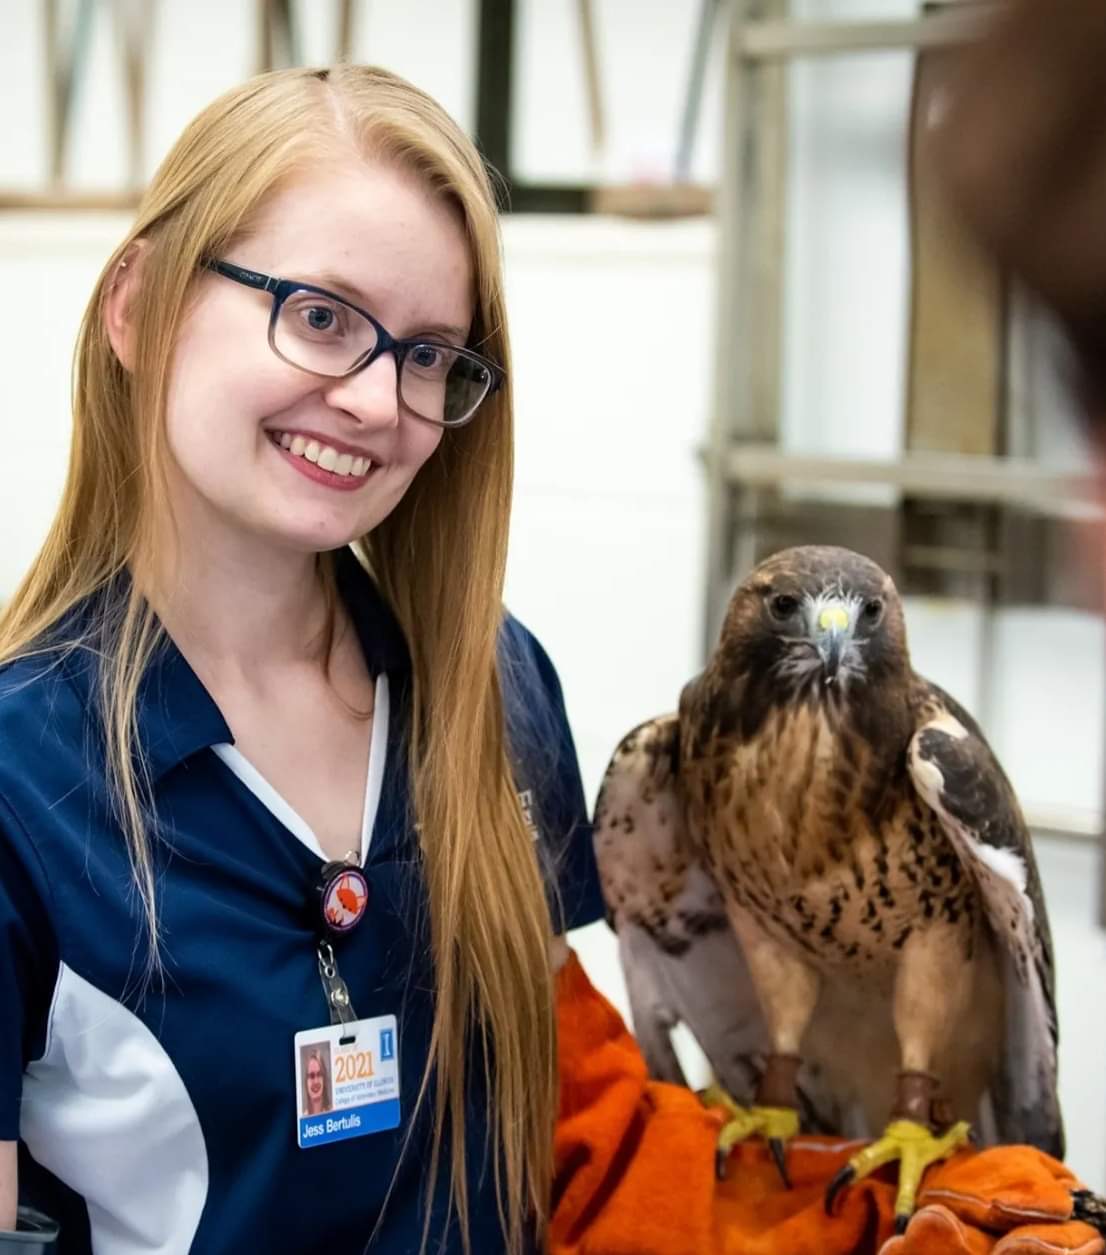 Dr. Jessica Bertulis DVM with a hawk